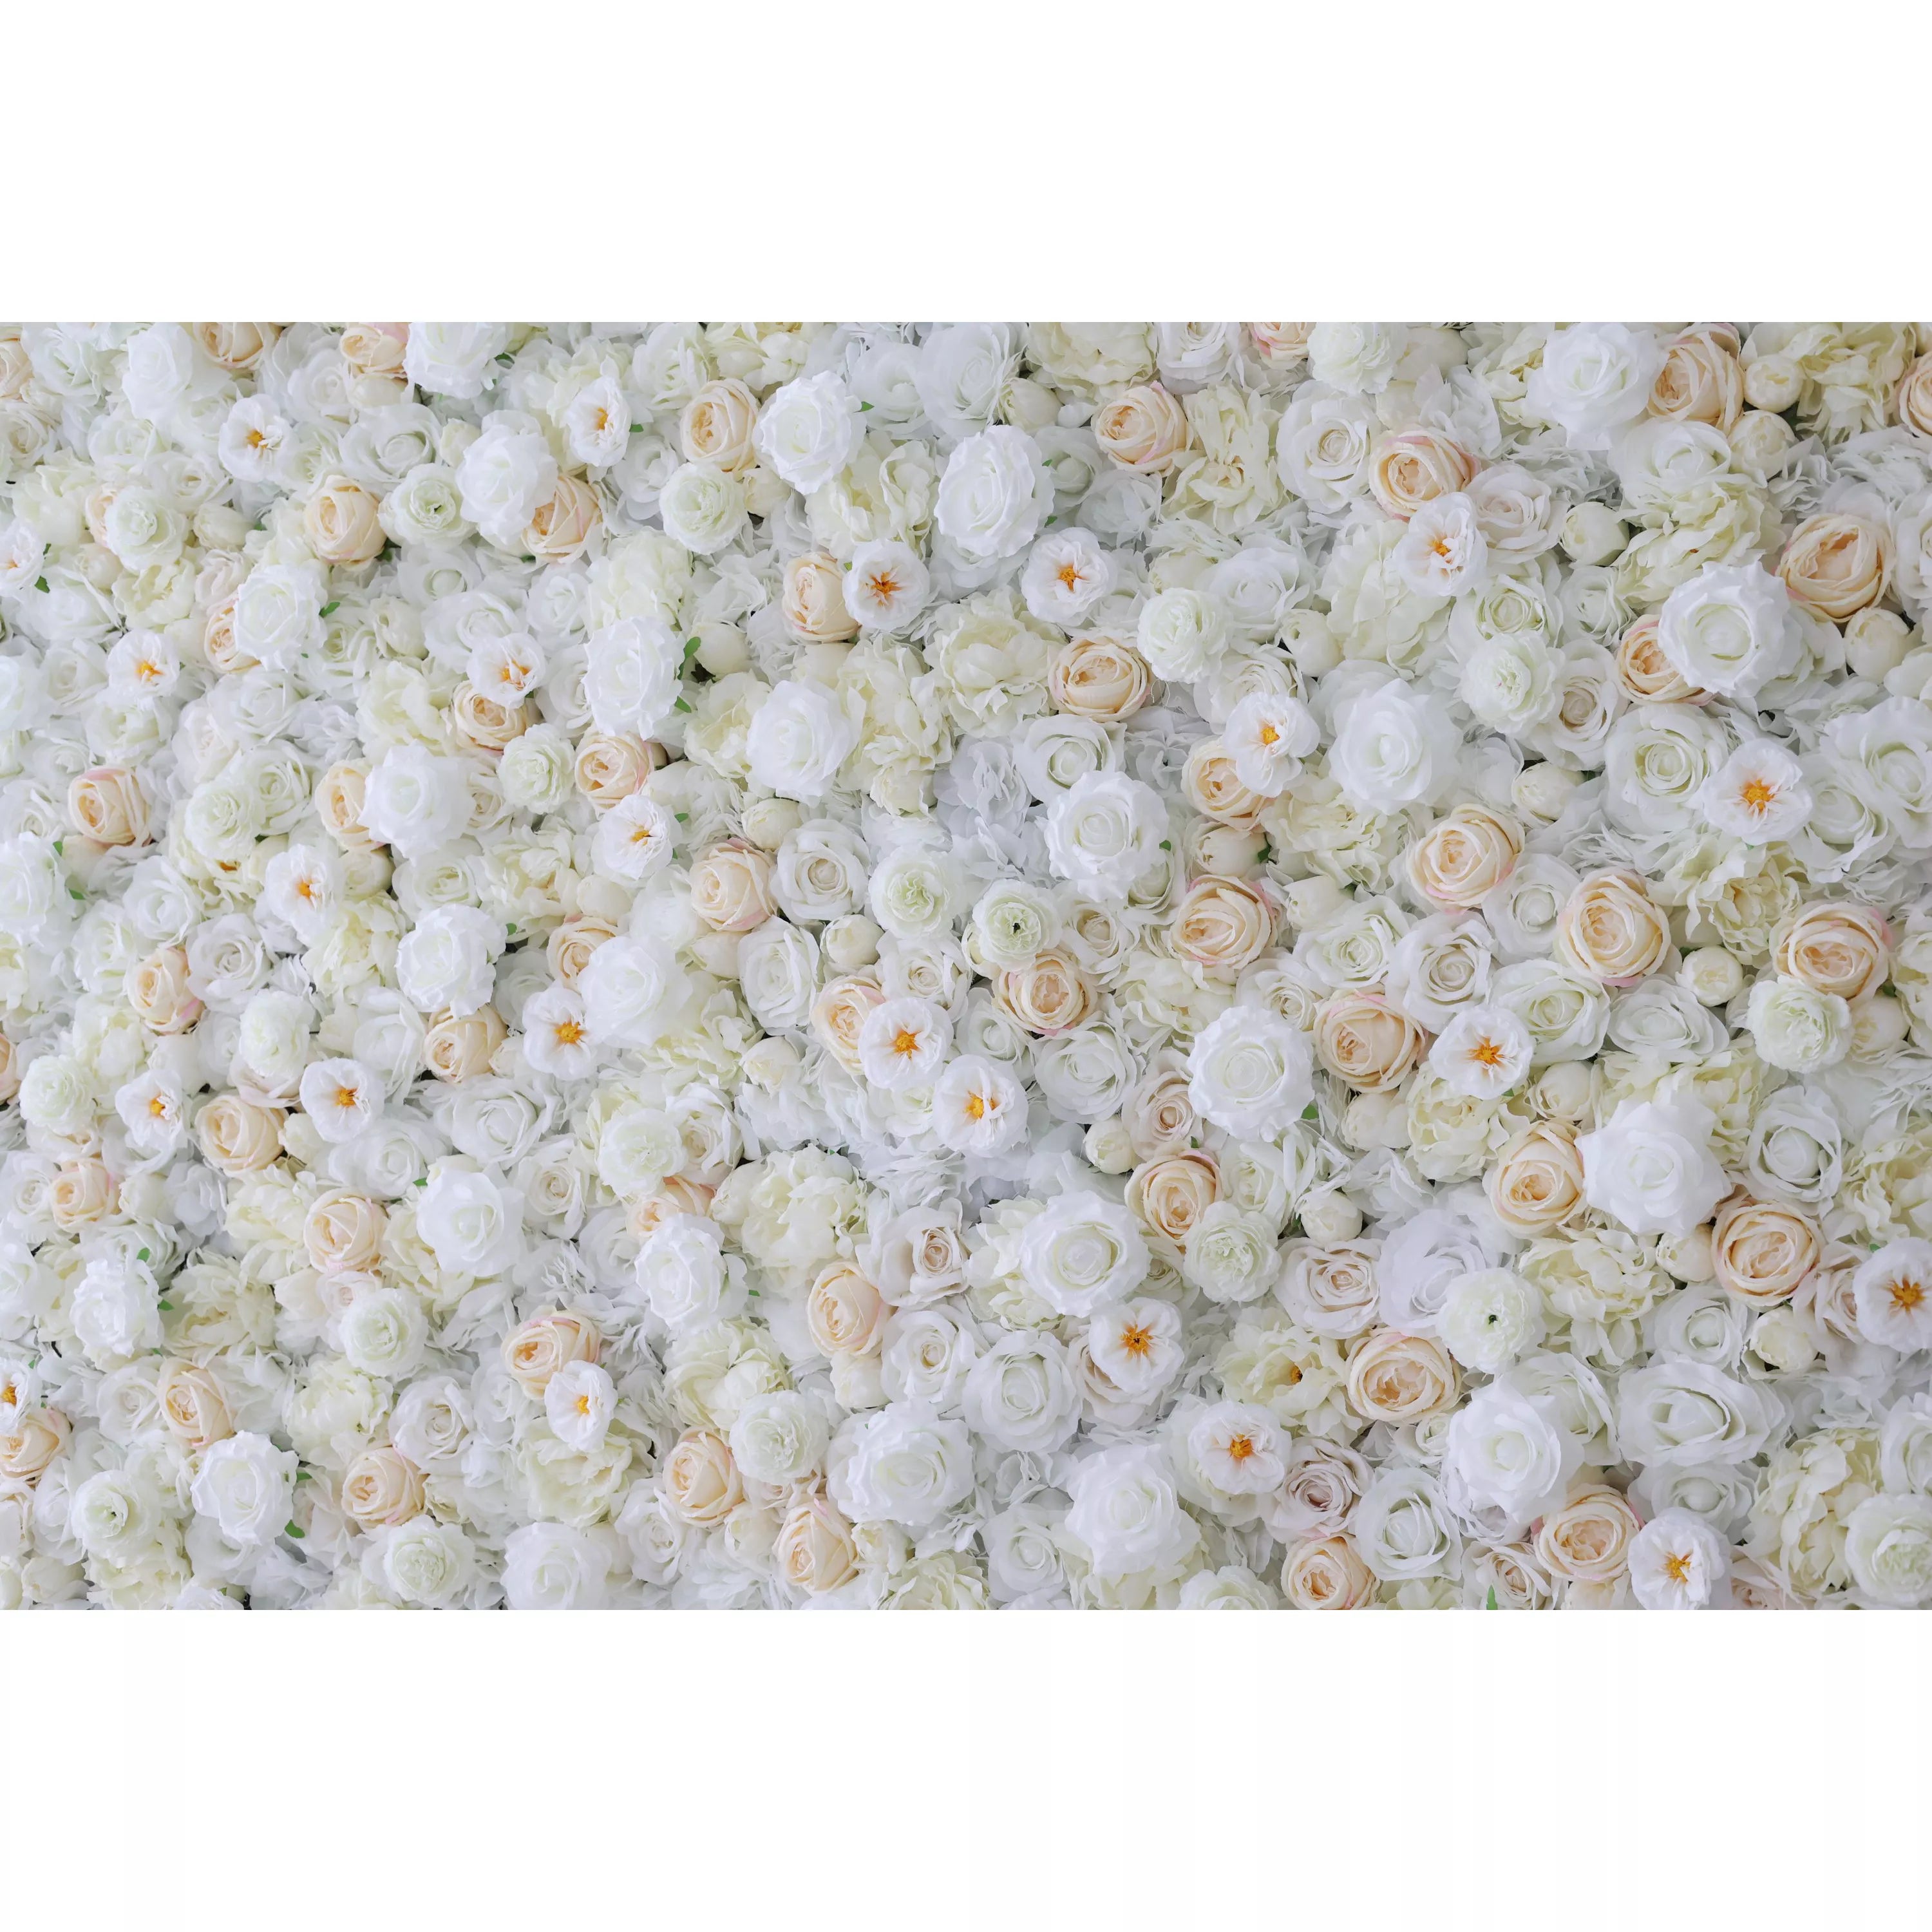 Valar Flowers Roll Up Tissu Artificiel Blanc, Crème et Champagne Fleur Mur Toile de Fond de Mariage, Décor de Fête Florale, Photographie d'Événement-VF-263 